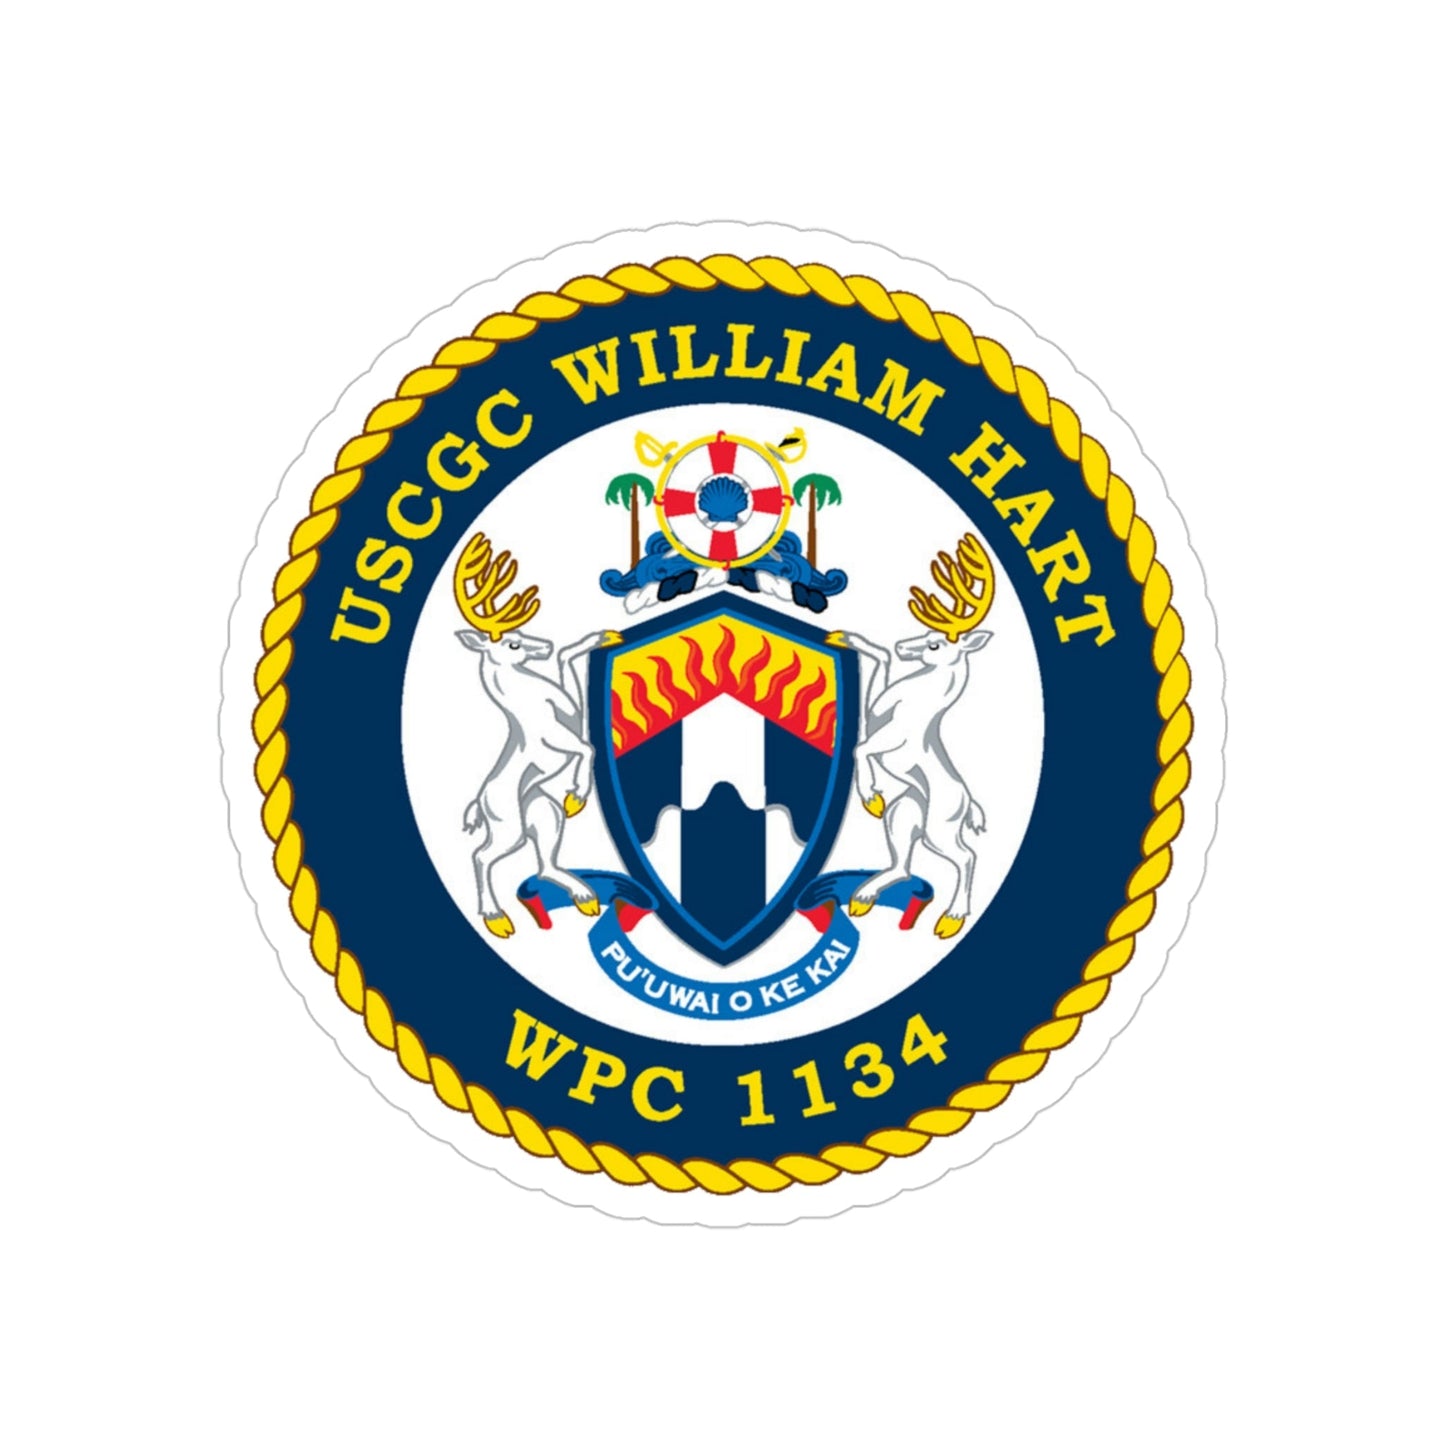 USCG C William Hart WPC 1134 (U.S. Coast Guard) Transparent STICKER Die-Cut Vinyl Decal-4 Inch-The Sticker Space